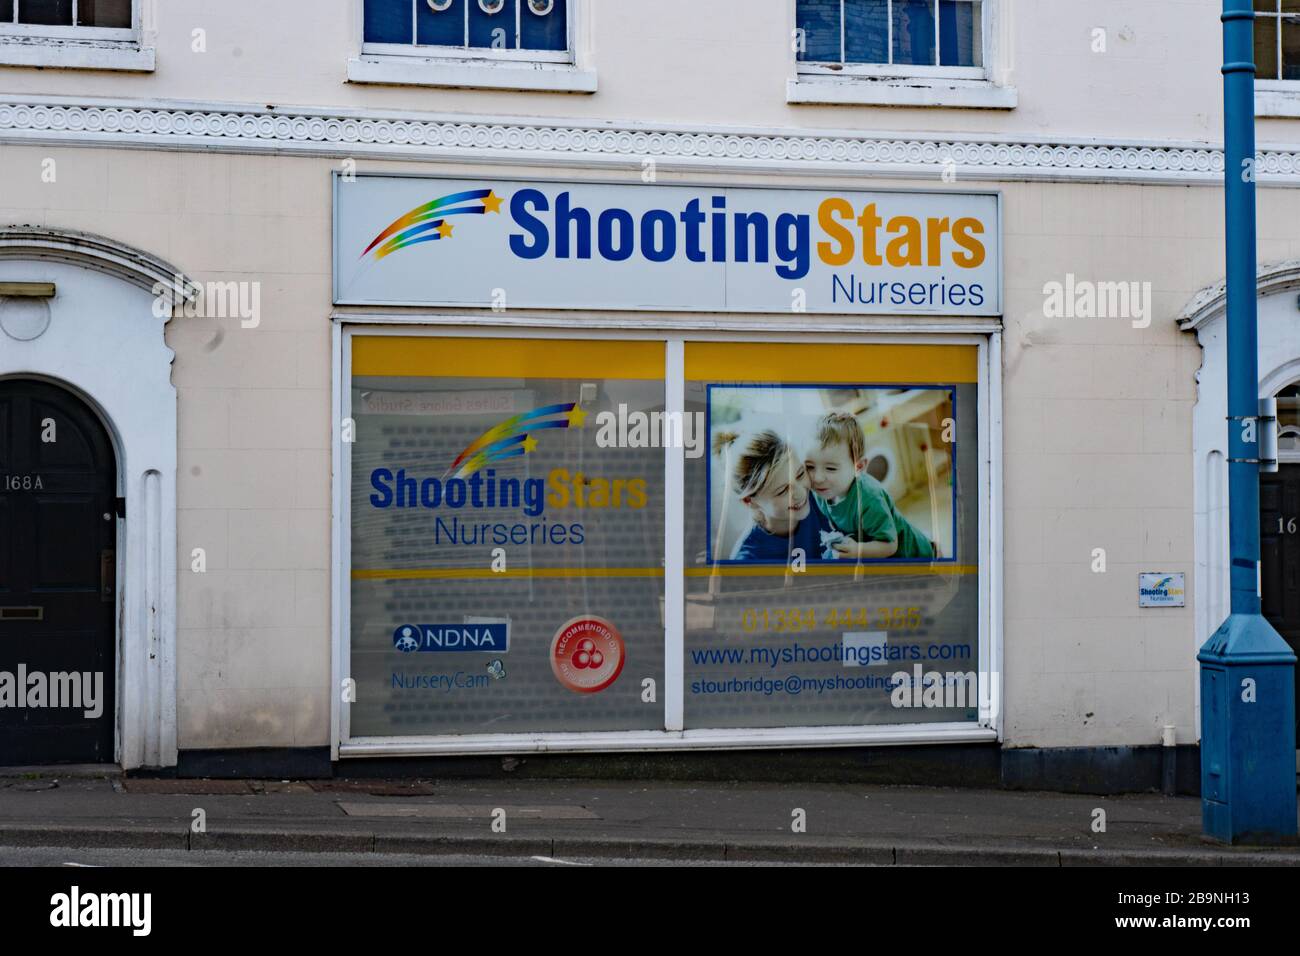 Tournage des étoiles Nurseries sur le devant de la boutique. Stourbridge. West Midlands. Mars 2020 Banque D'Images